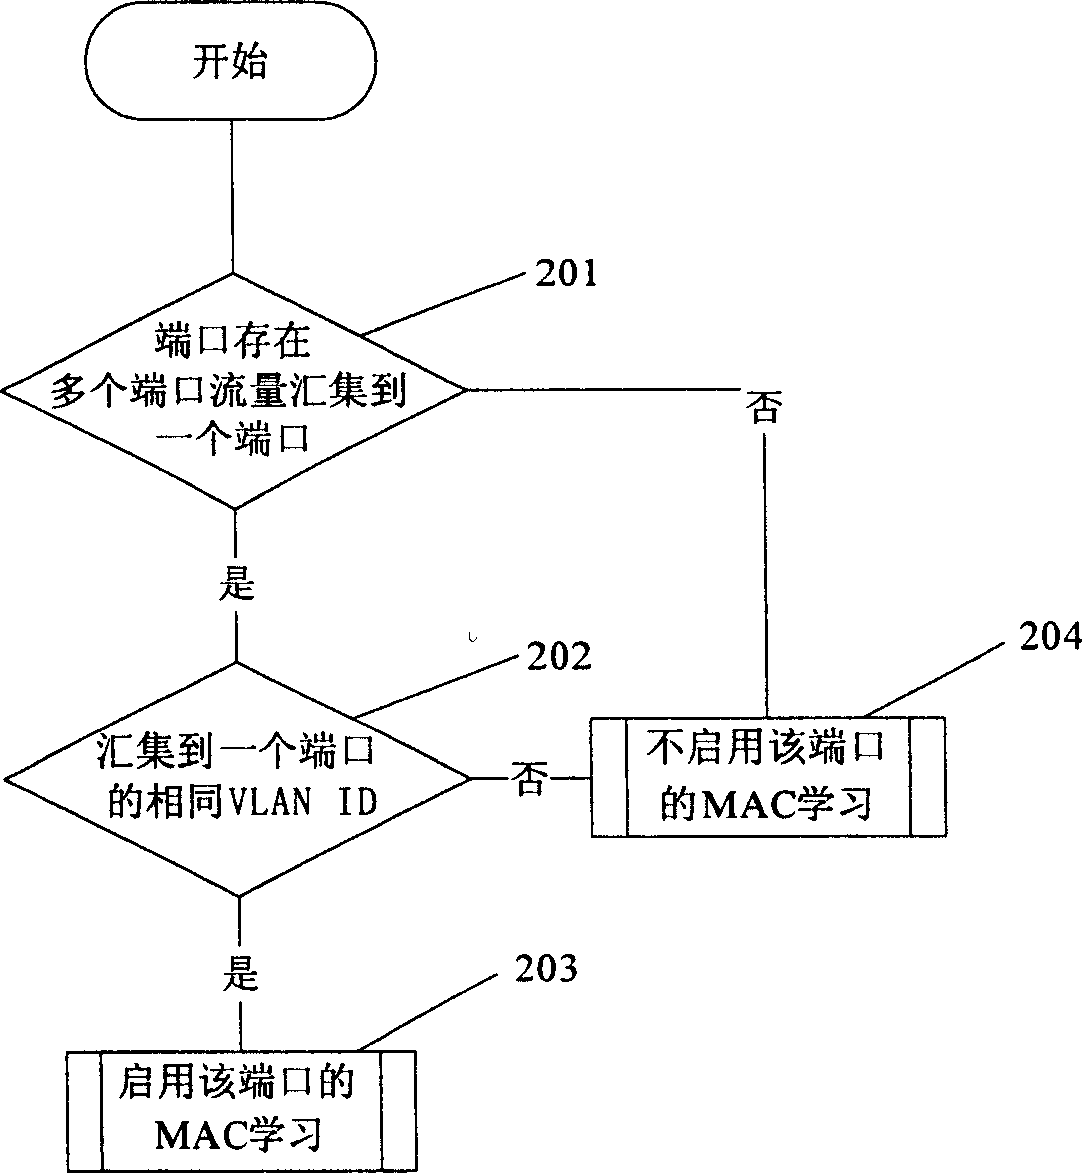 Virtual circuit exchanging method based on MAC studying